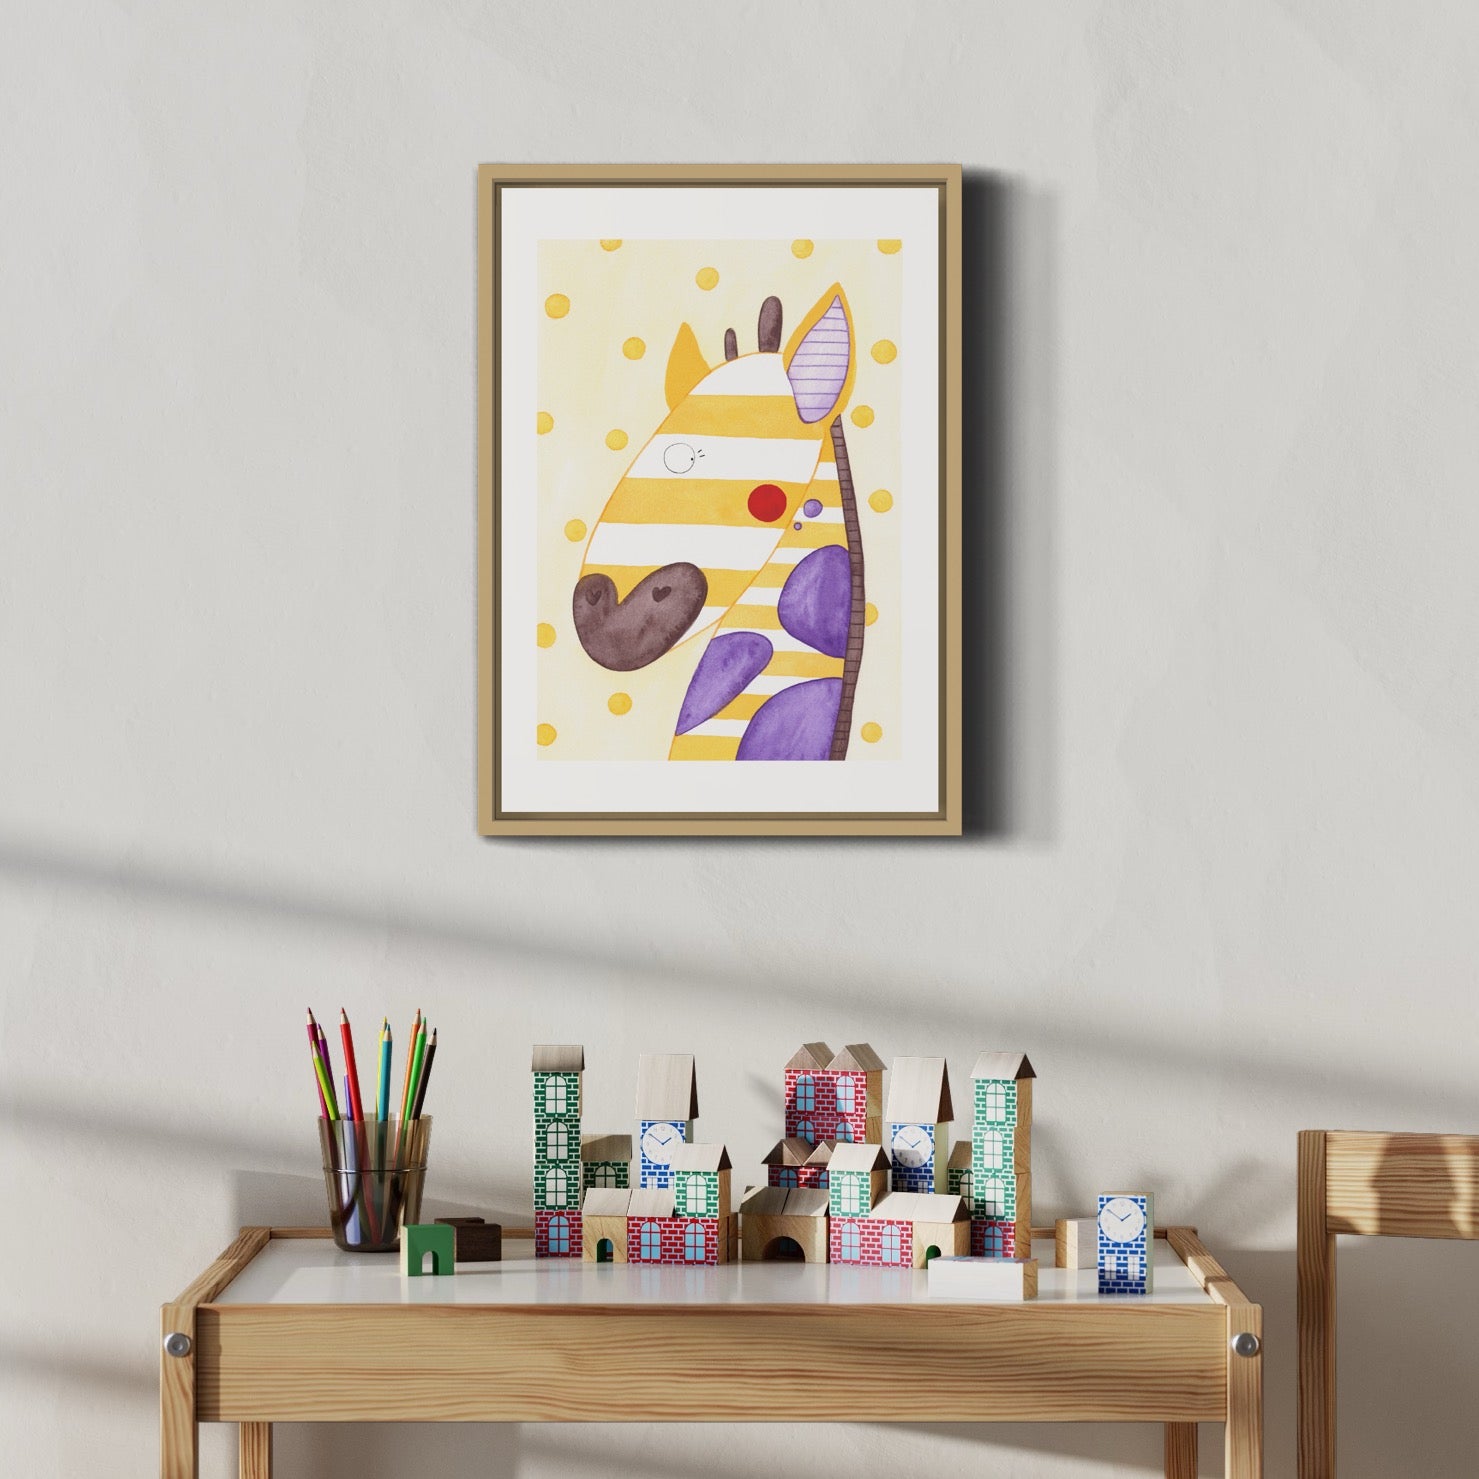 Kunstdruck "Giraffe" fürs Kinderzimmer